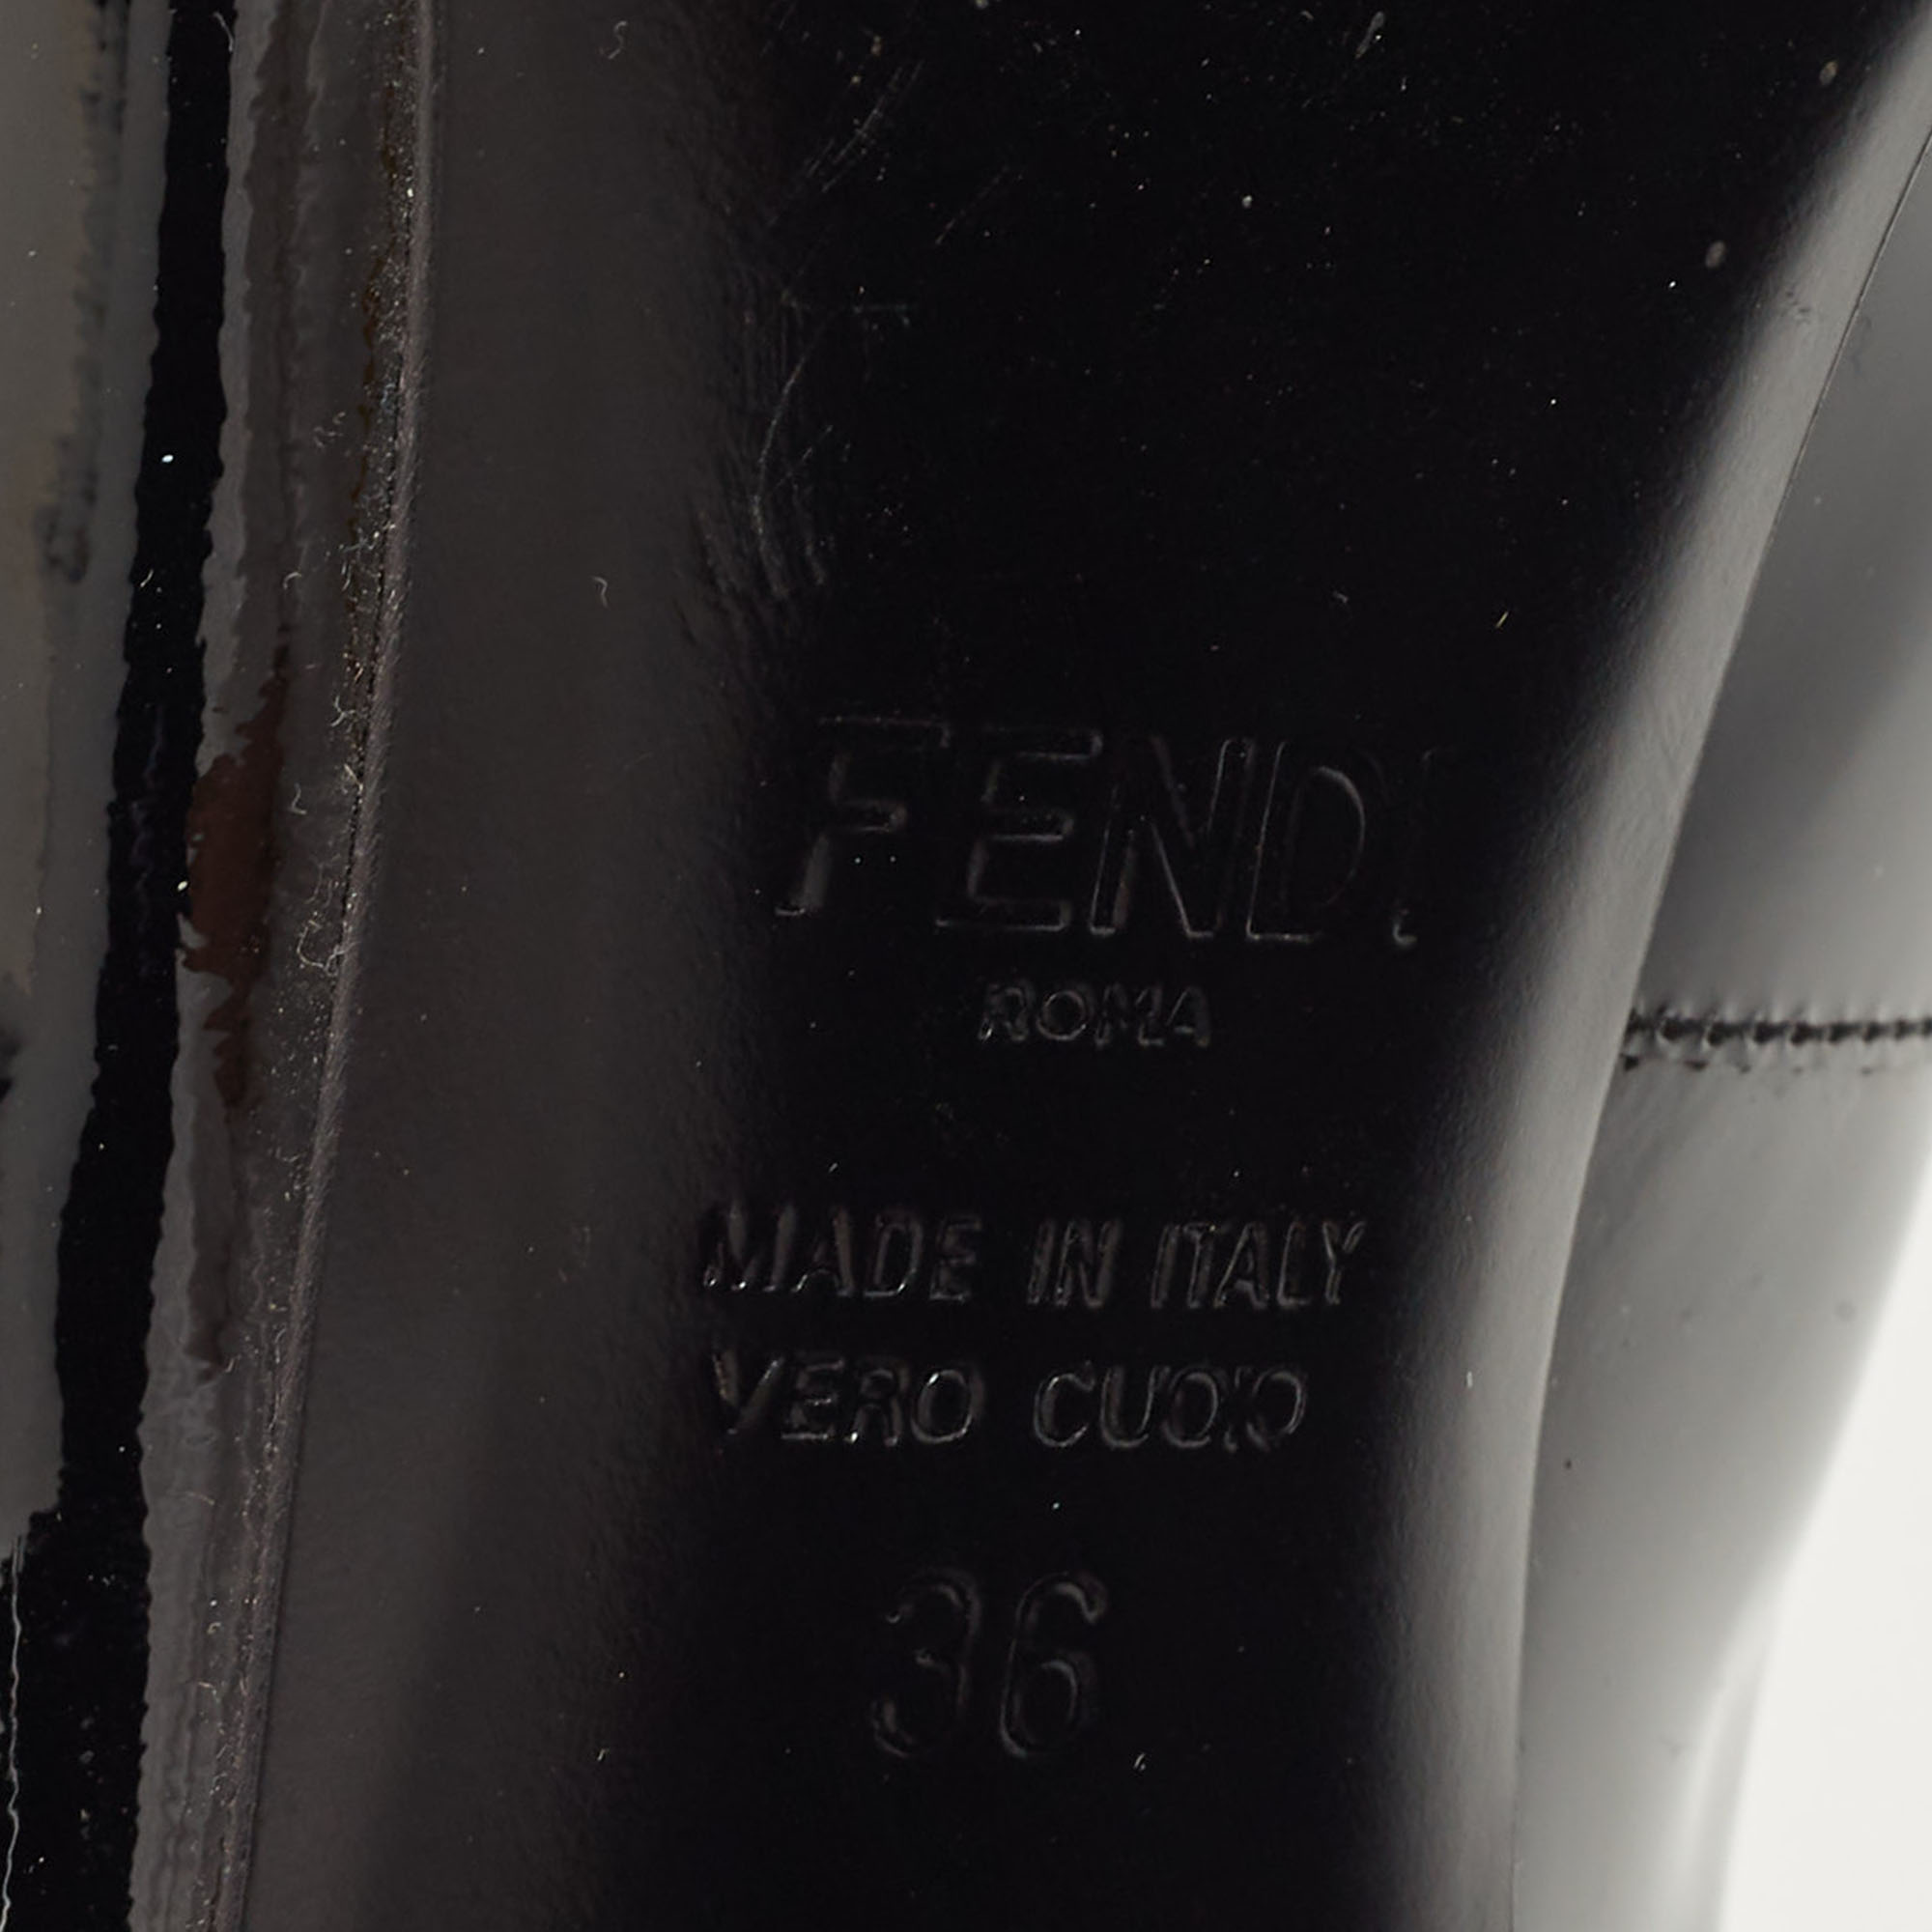 Fendi Black Patent Leather Buckle Pumps Size 36